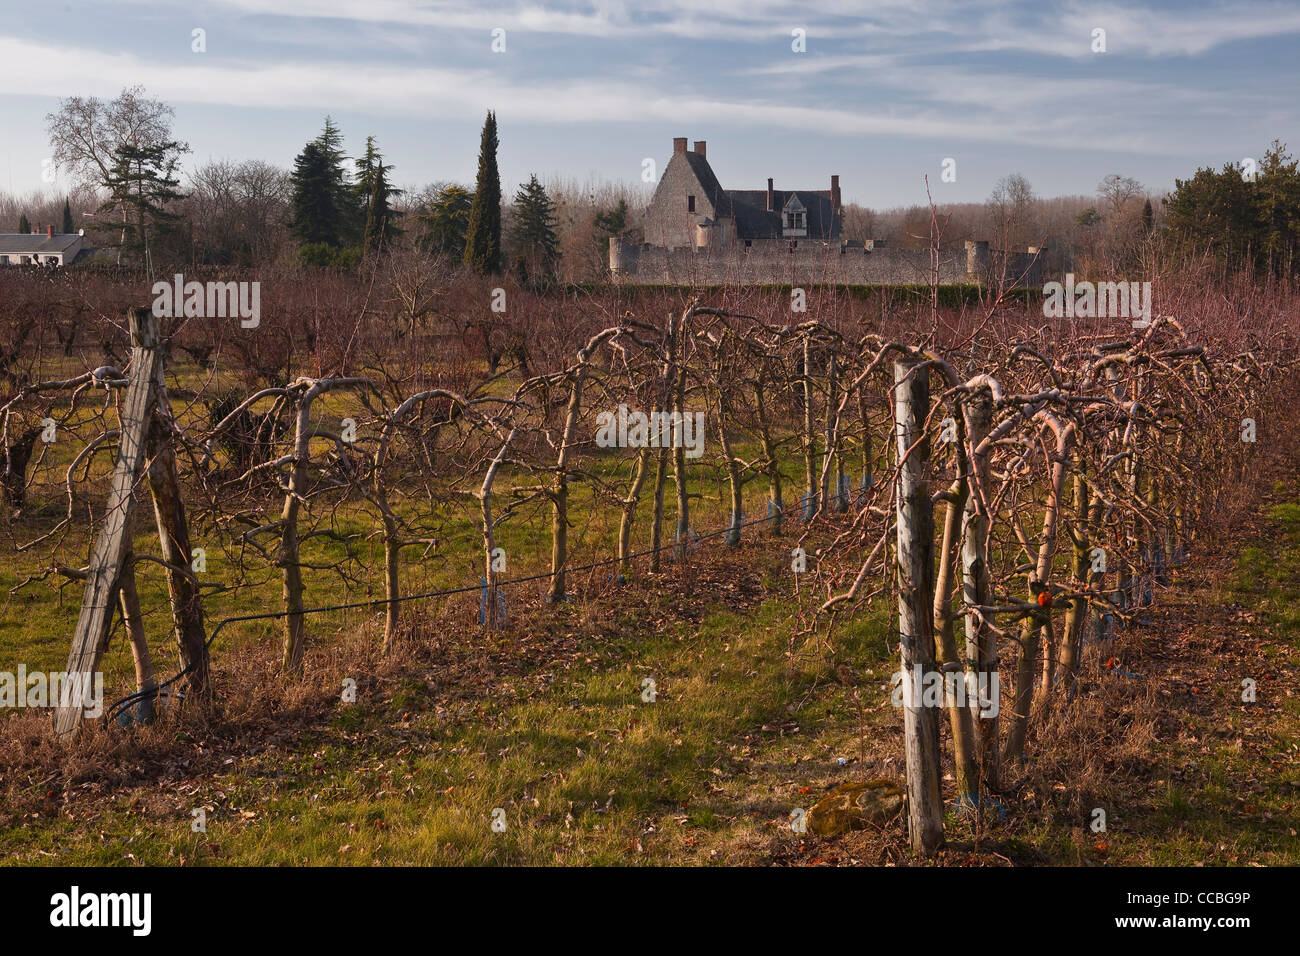 Row upon row of cherry trees near to Villandry, France. Stock Photo